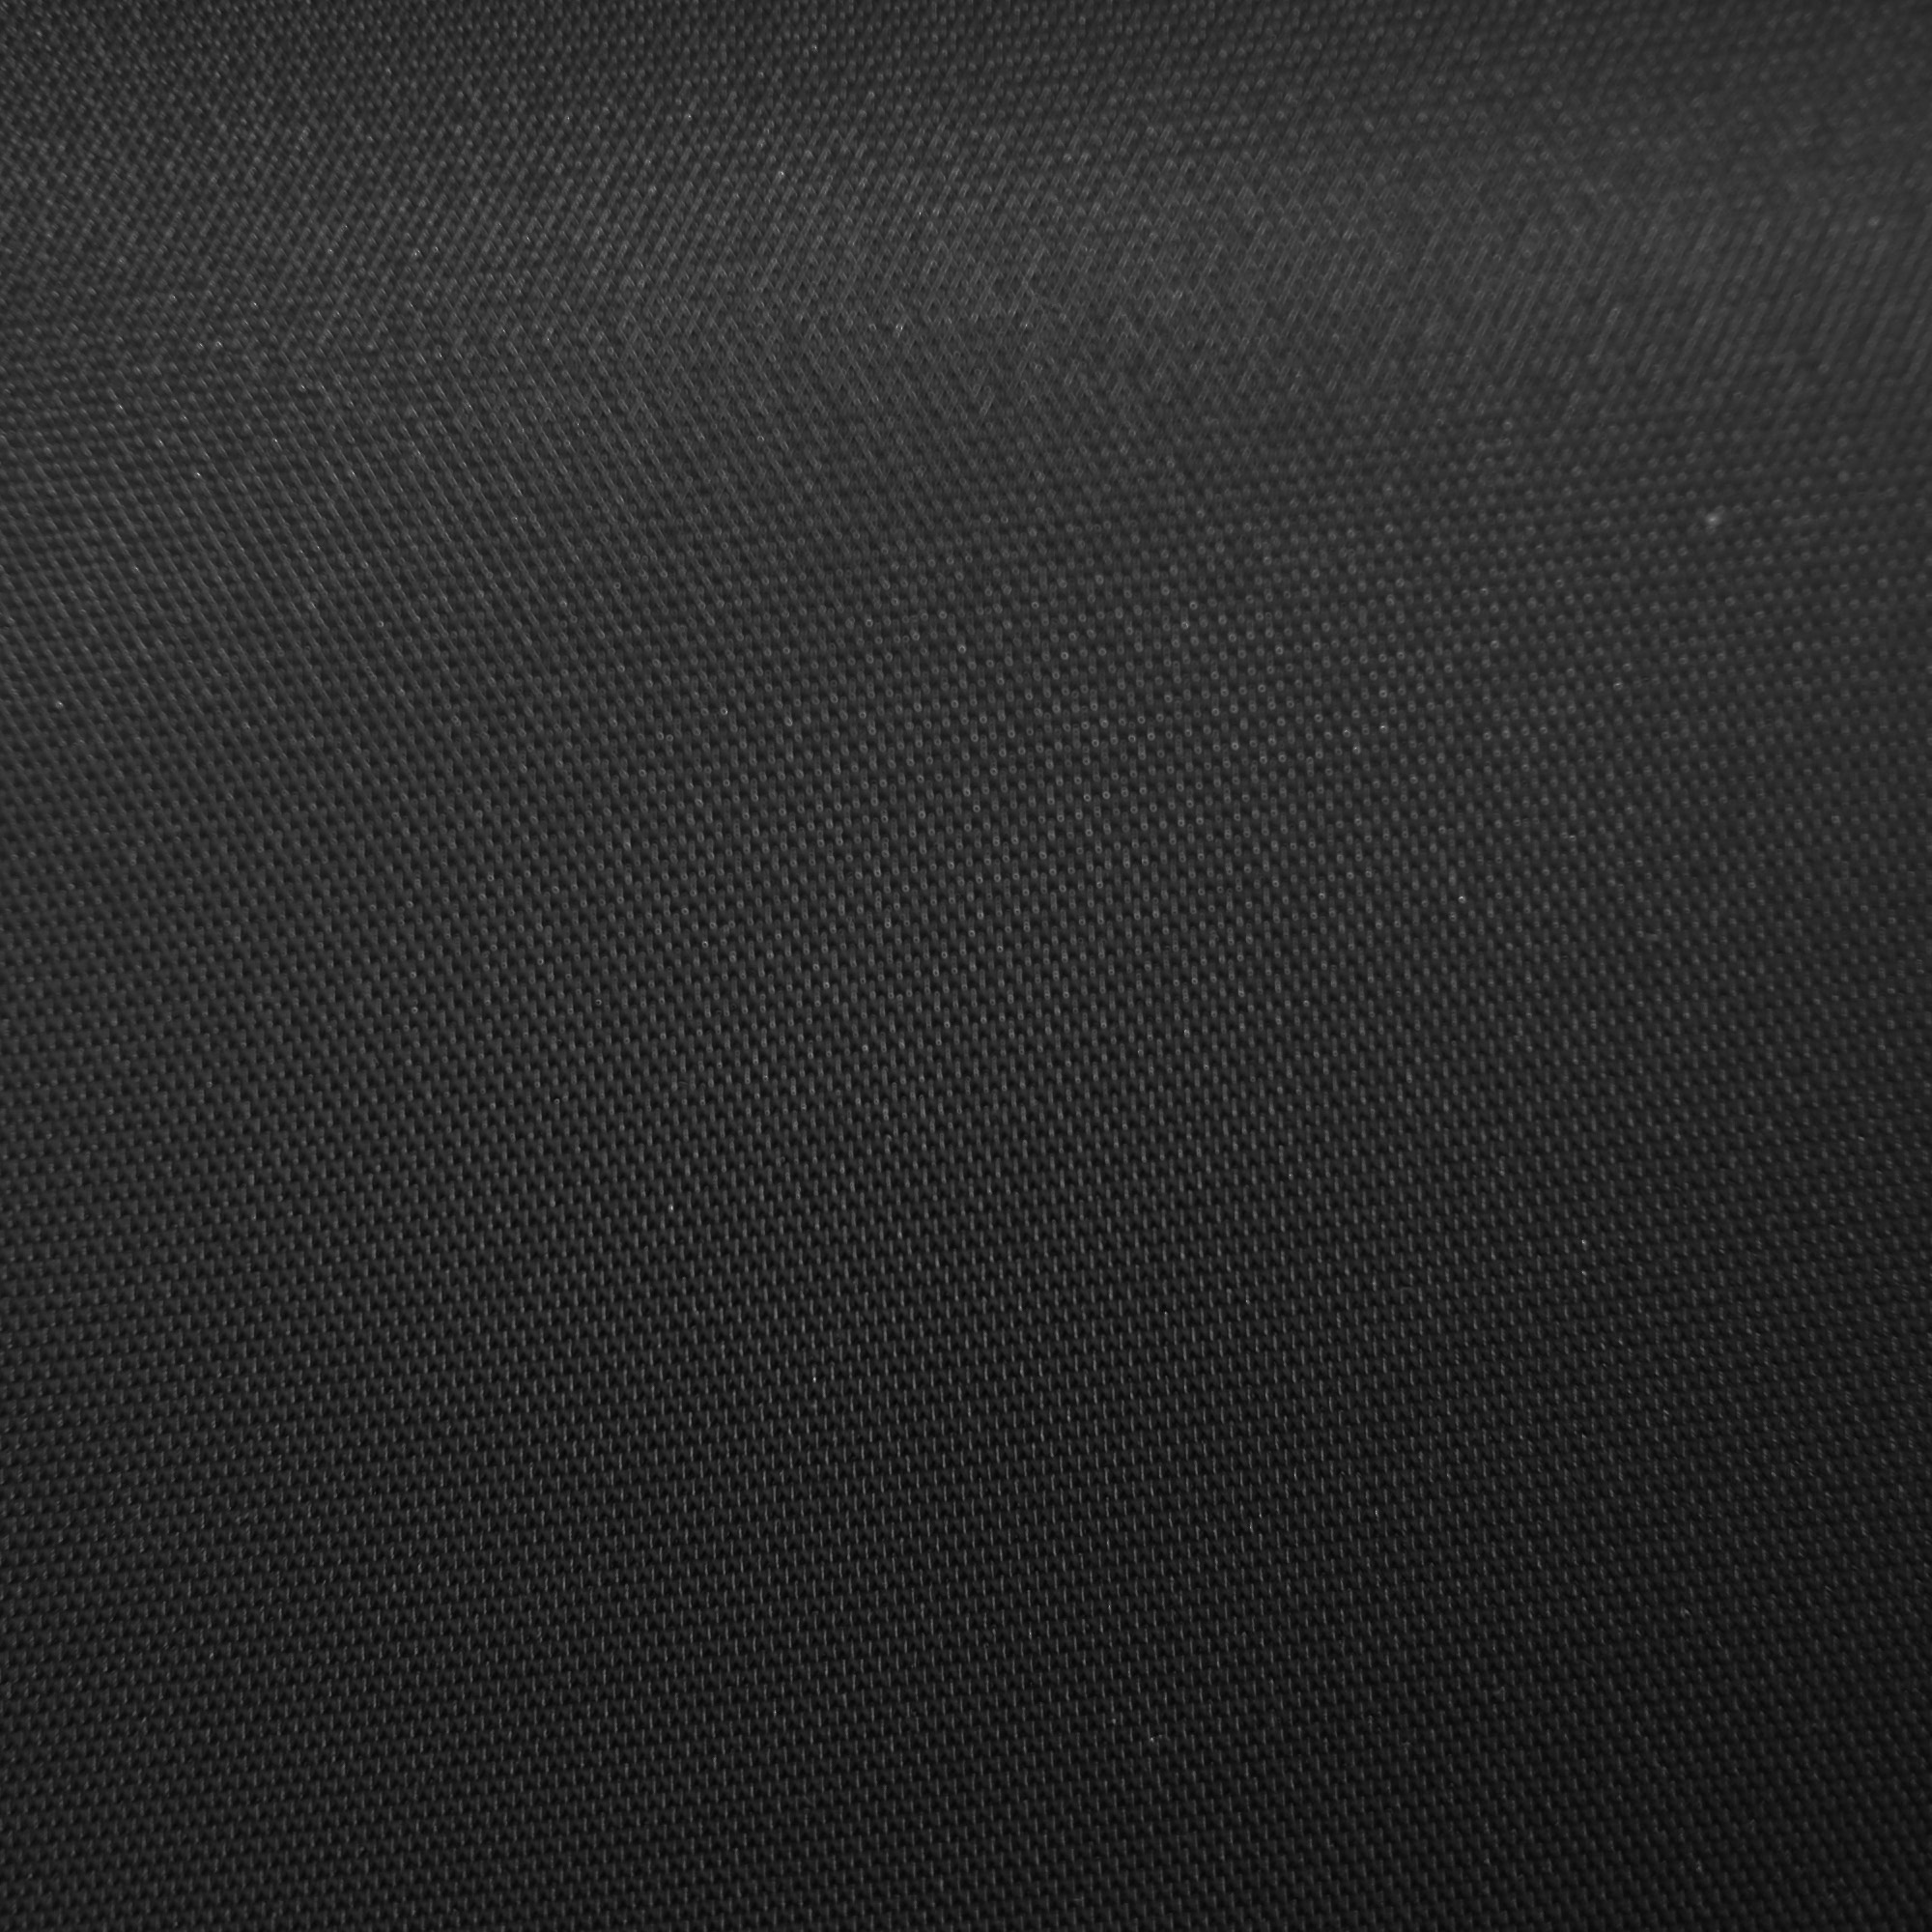 [73+] Flat Black Wallpaper | WallpaperSafari.com